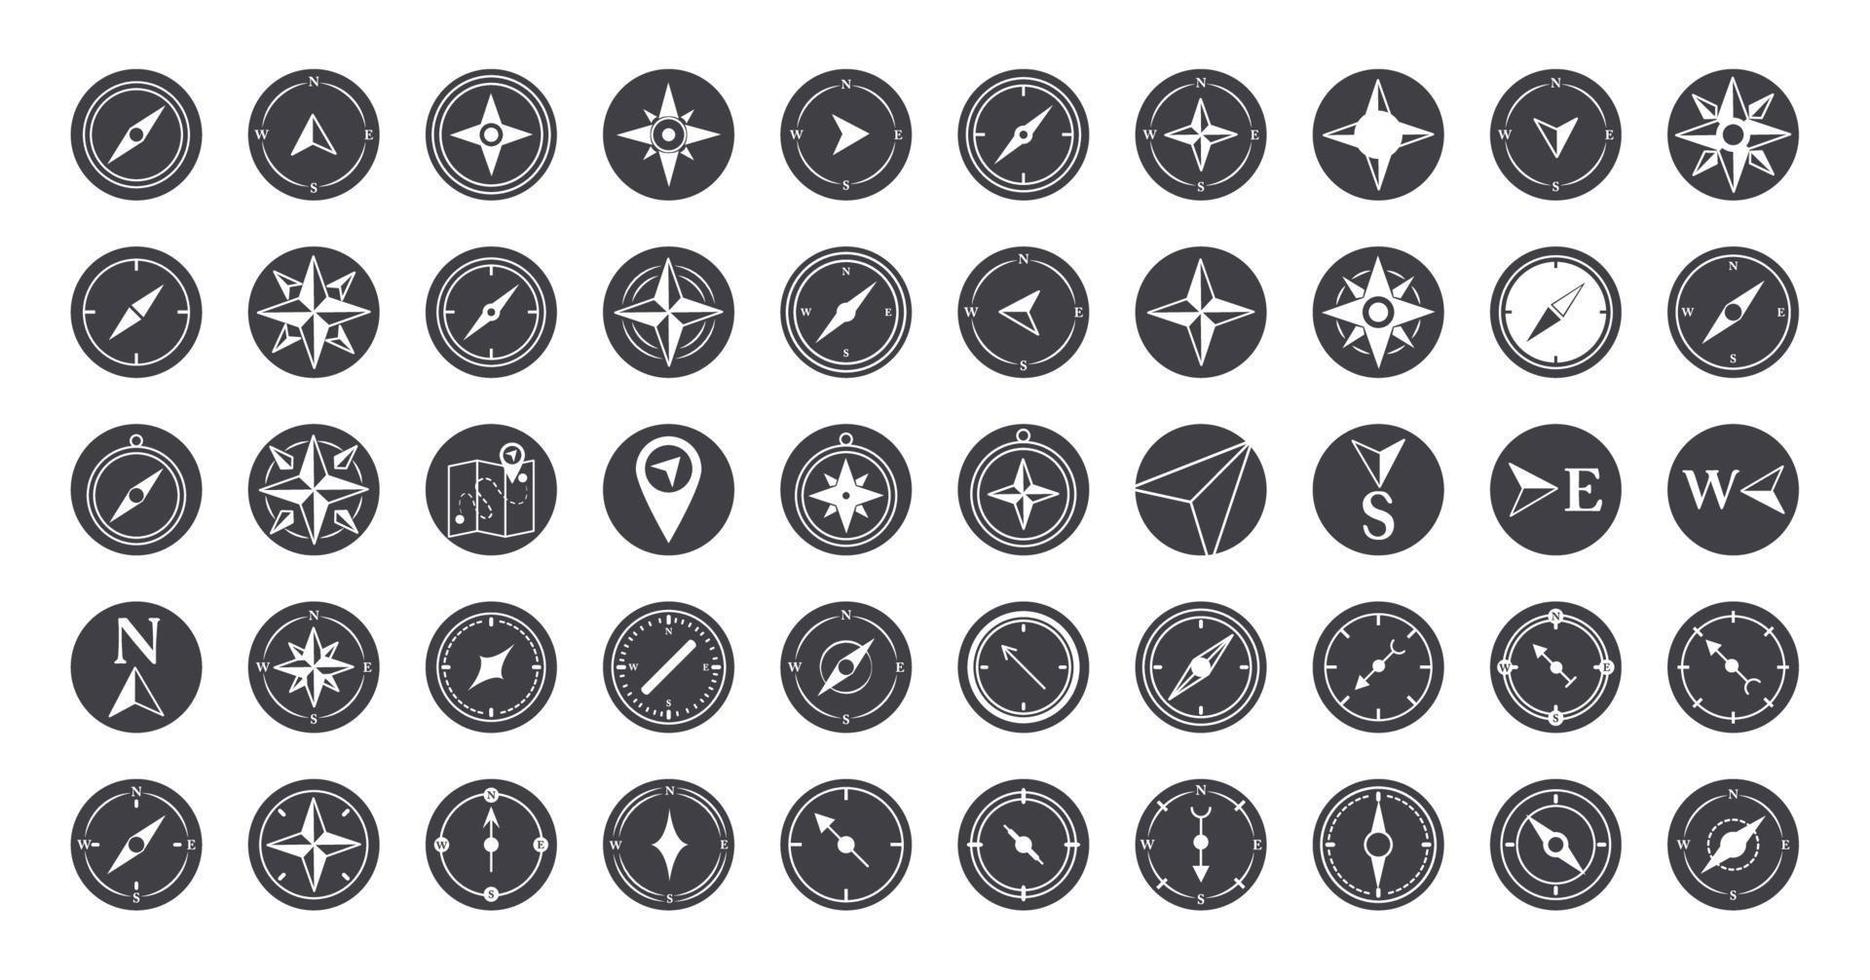 kompass reste sig navigering kartografi resa utforska Utrustning ikoner uppsättning silhuett design ikon vektor